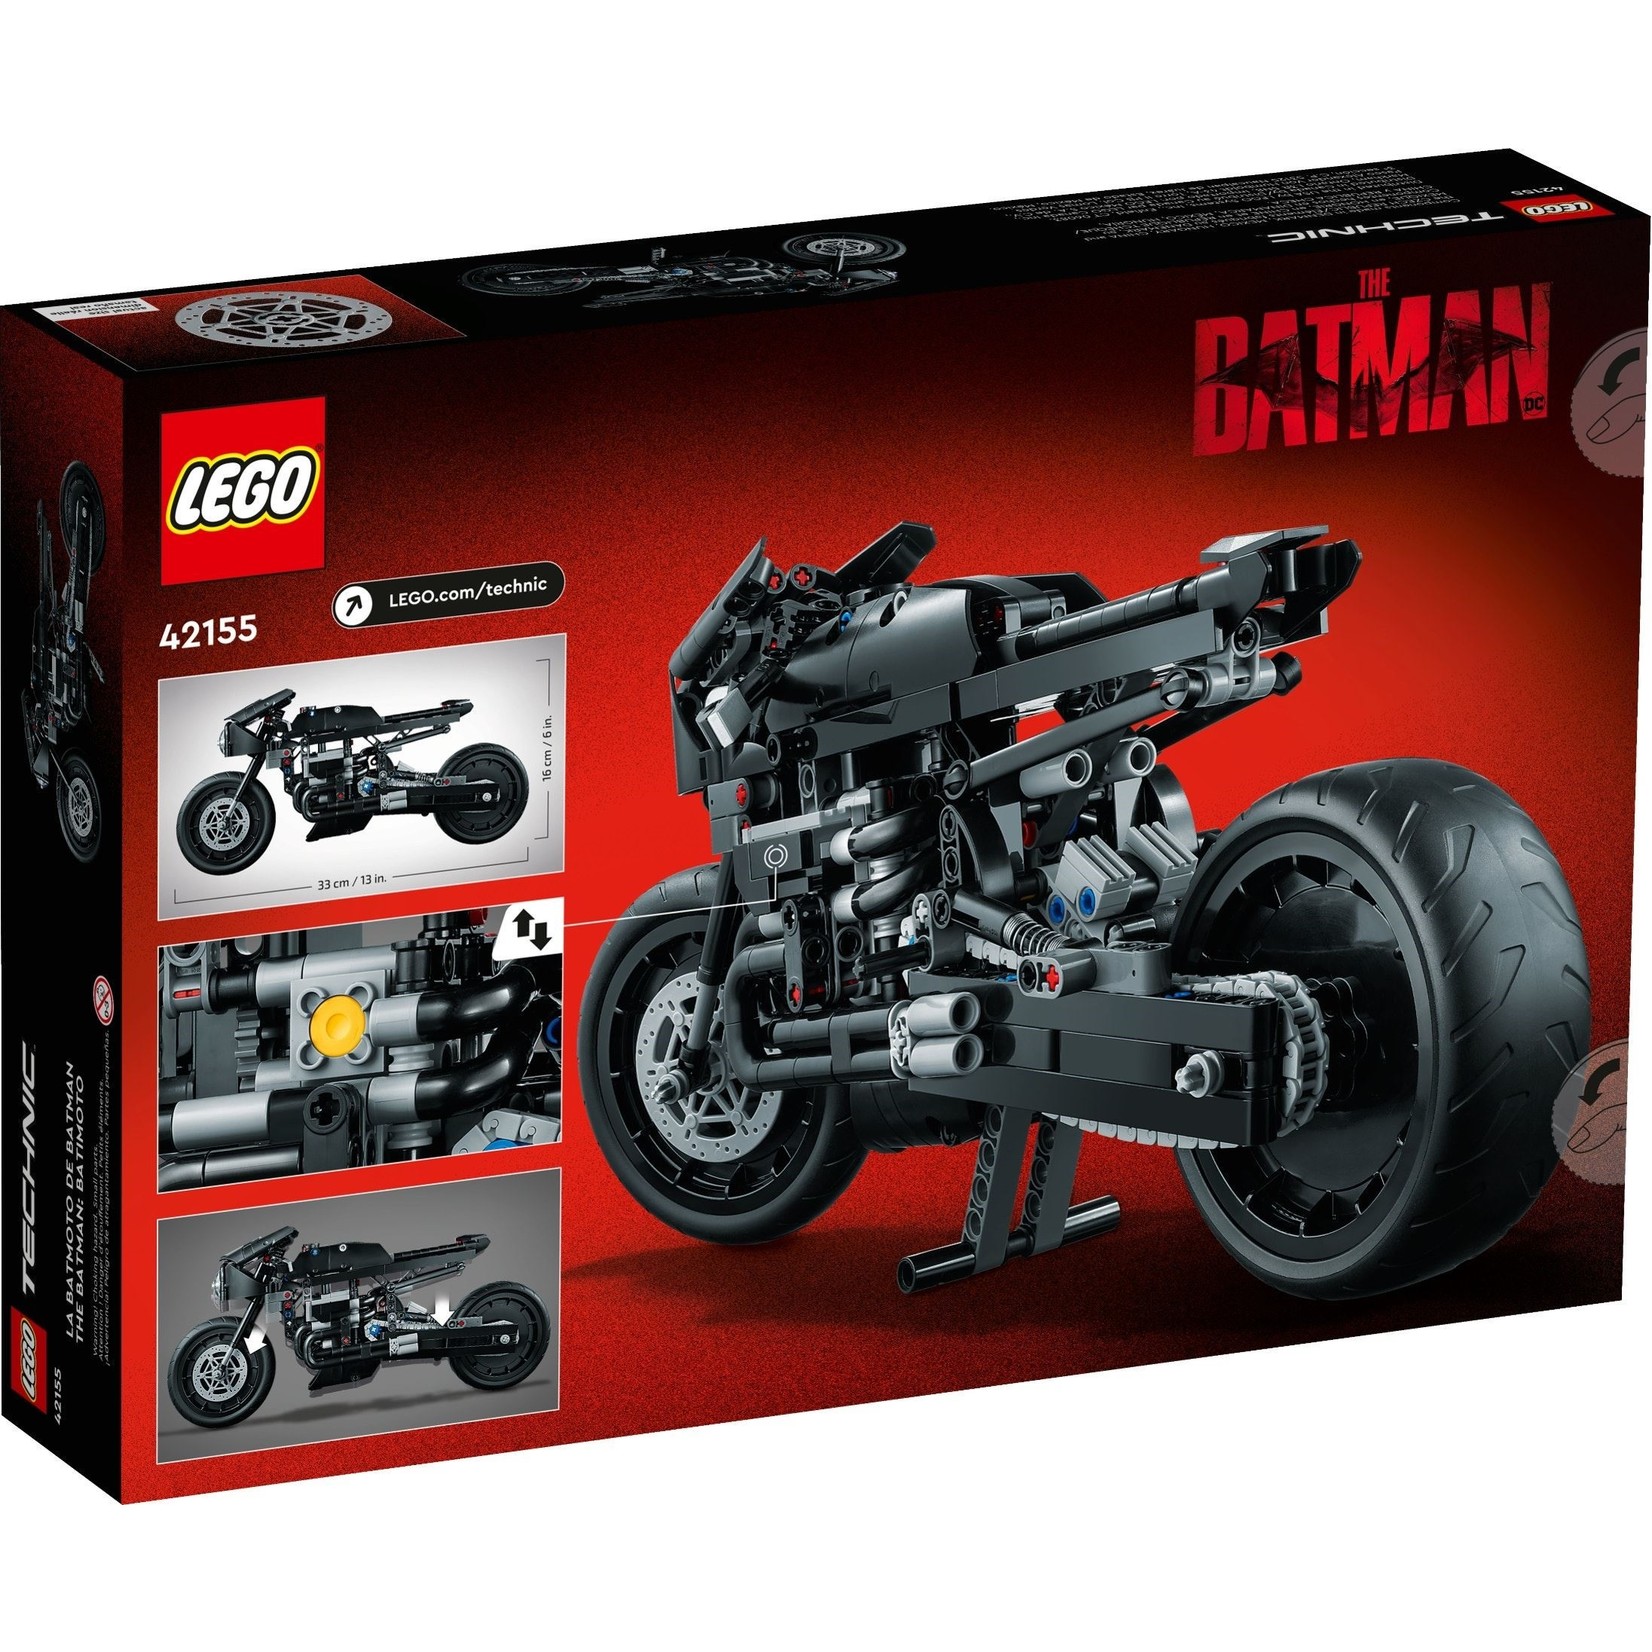 LEGO THE BATMAN - BATCYCLE - 42155